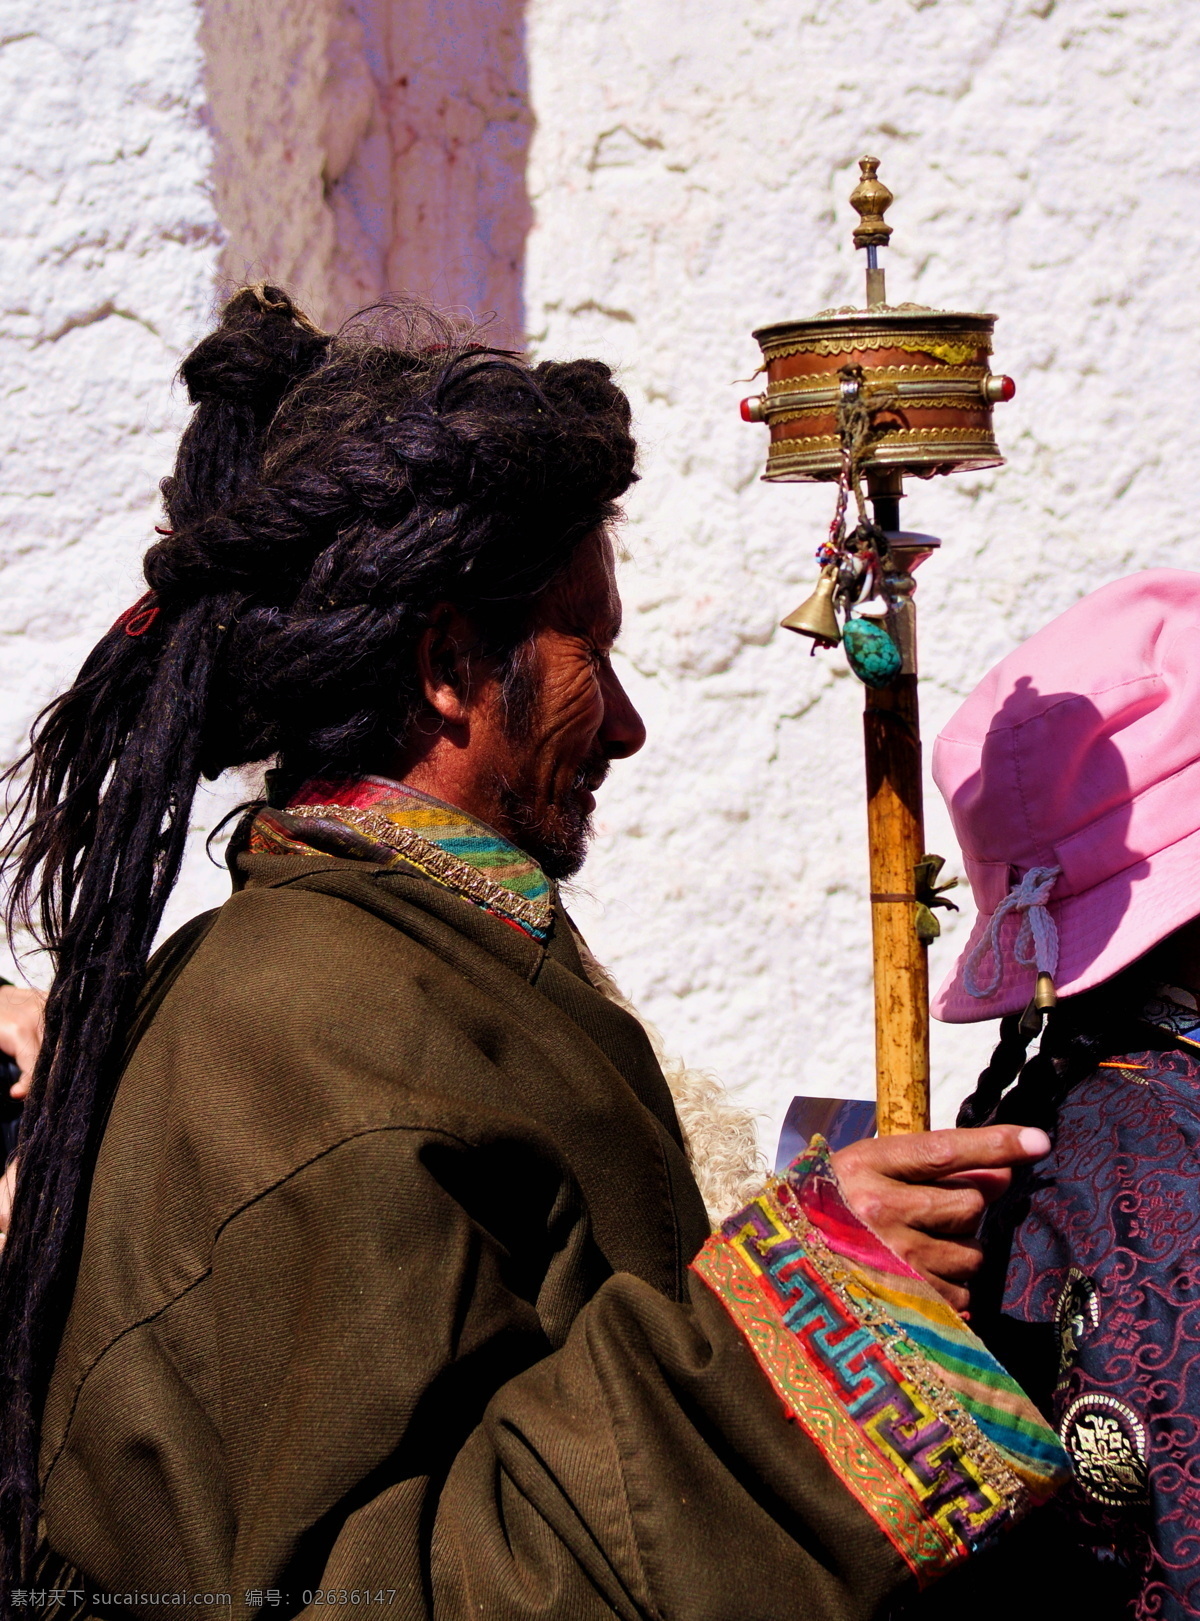 西藏朝圣 西藏 朝圣 人物 转经筒 信仰 人物图库 人物摄影